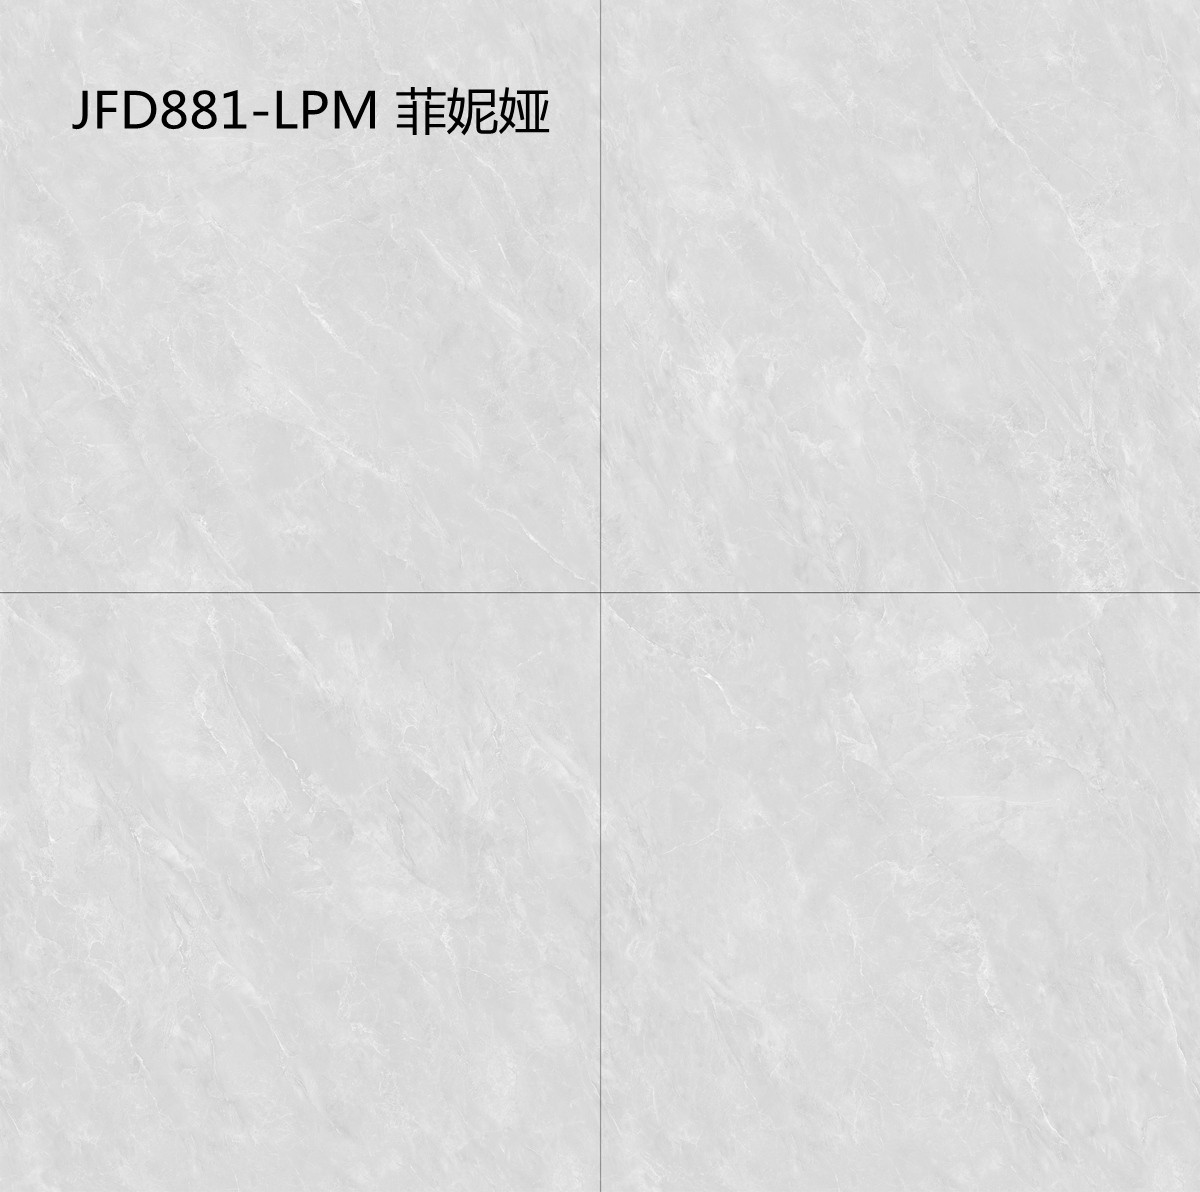 JFD881-LPM 菲妮娅